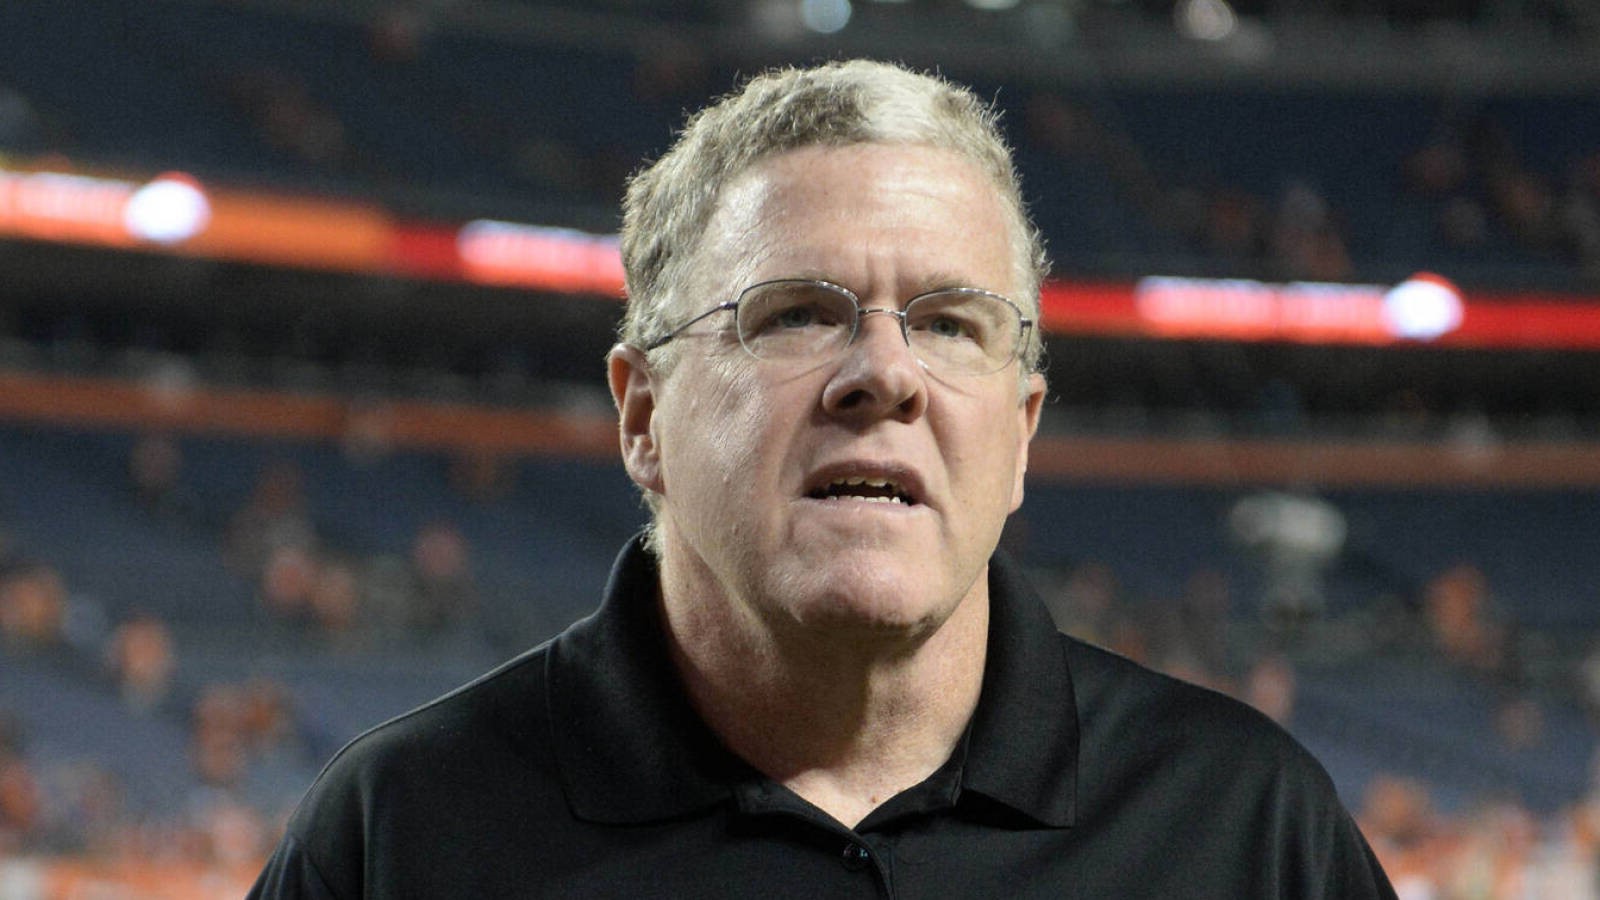 Peter King, Legendary NFL Sportswriter, Announces Retirement